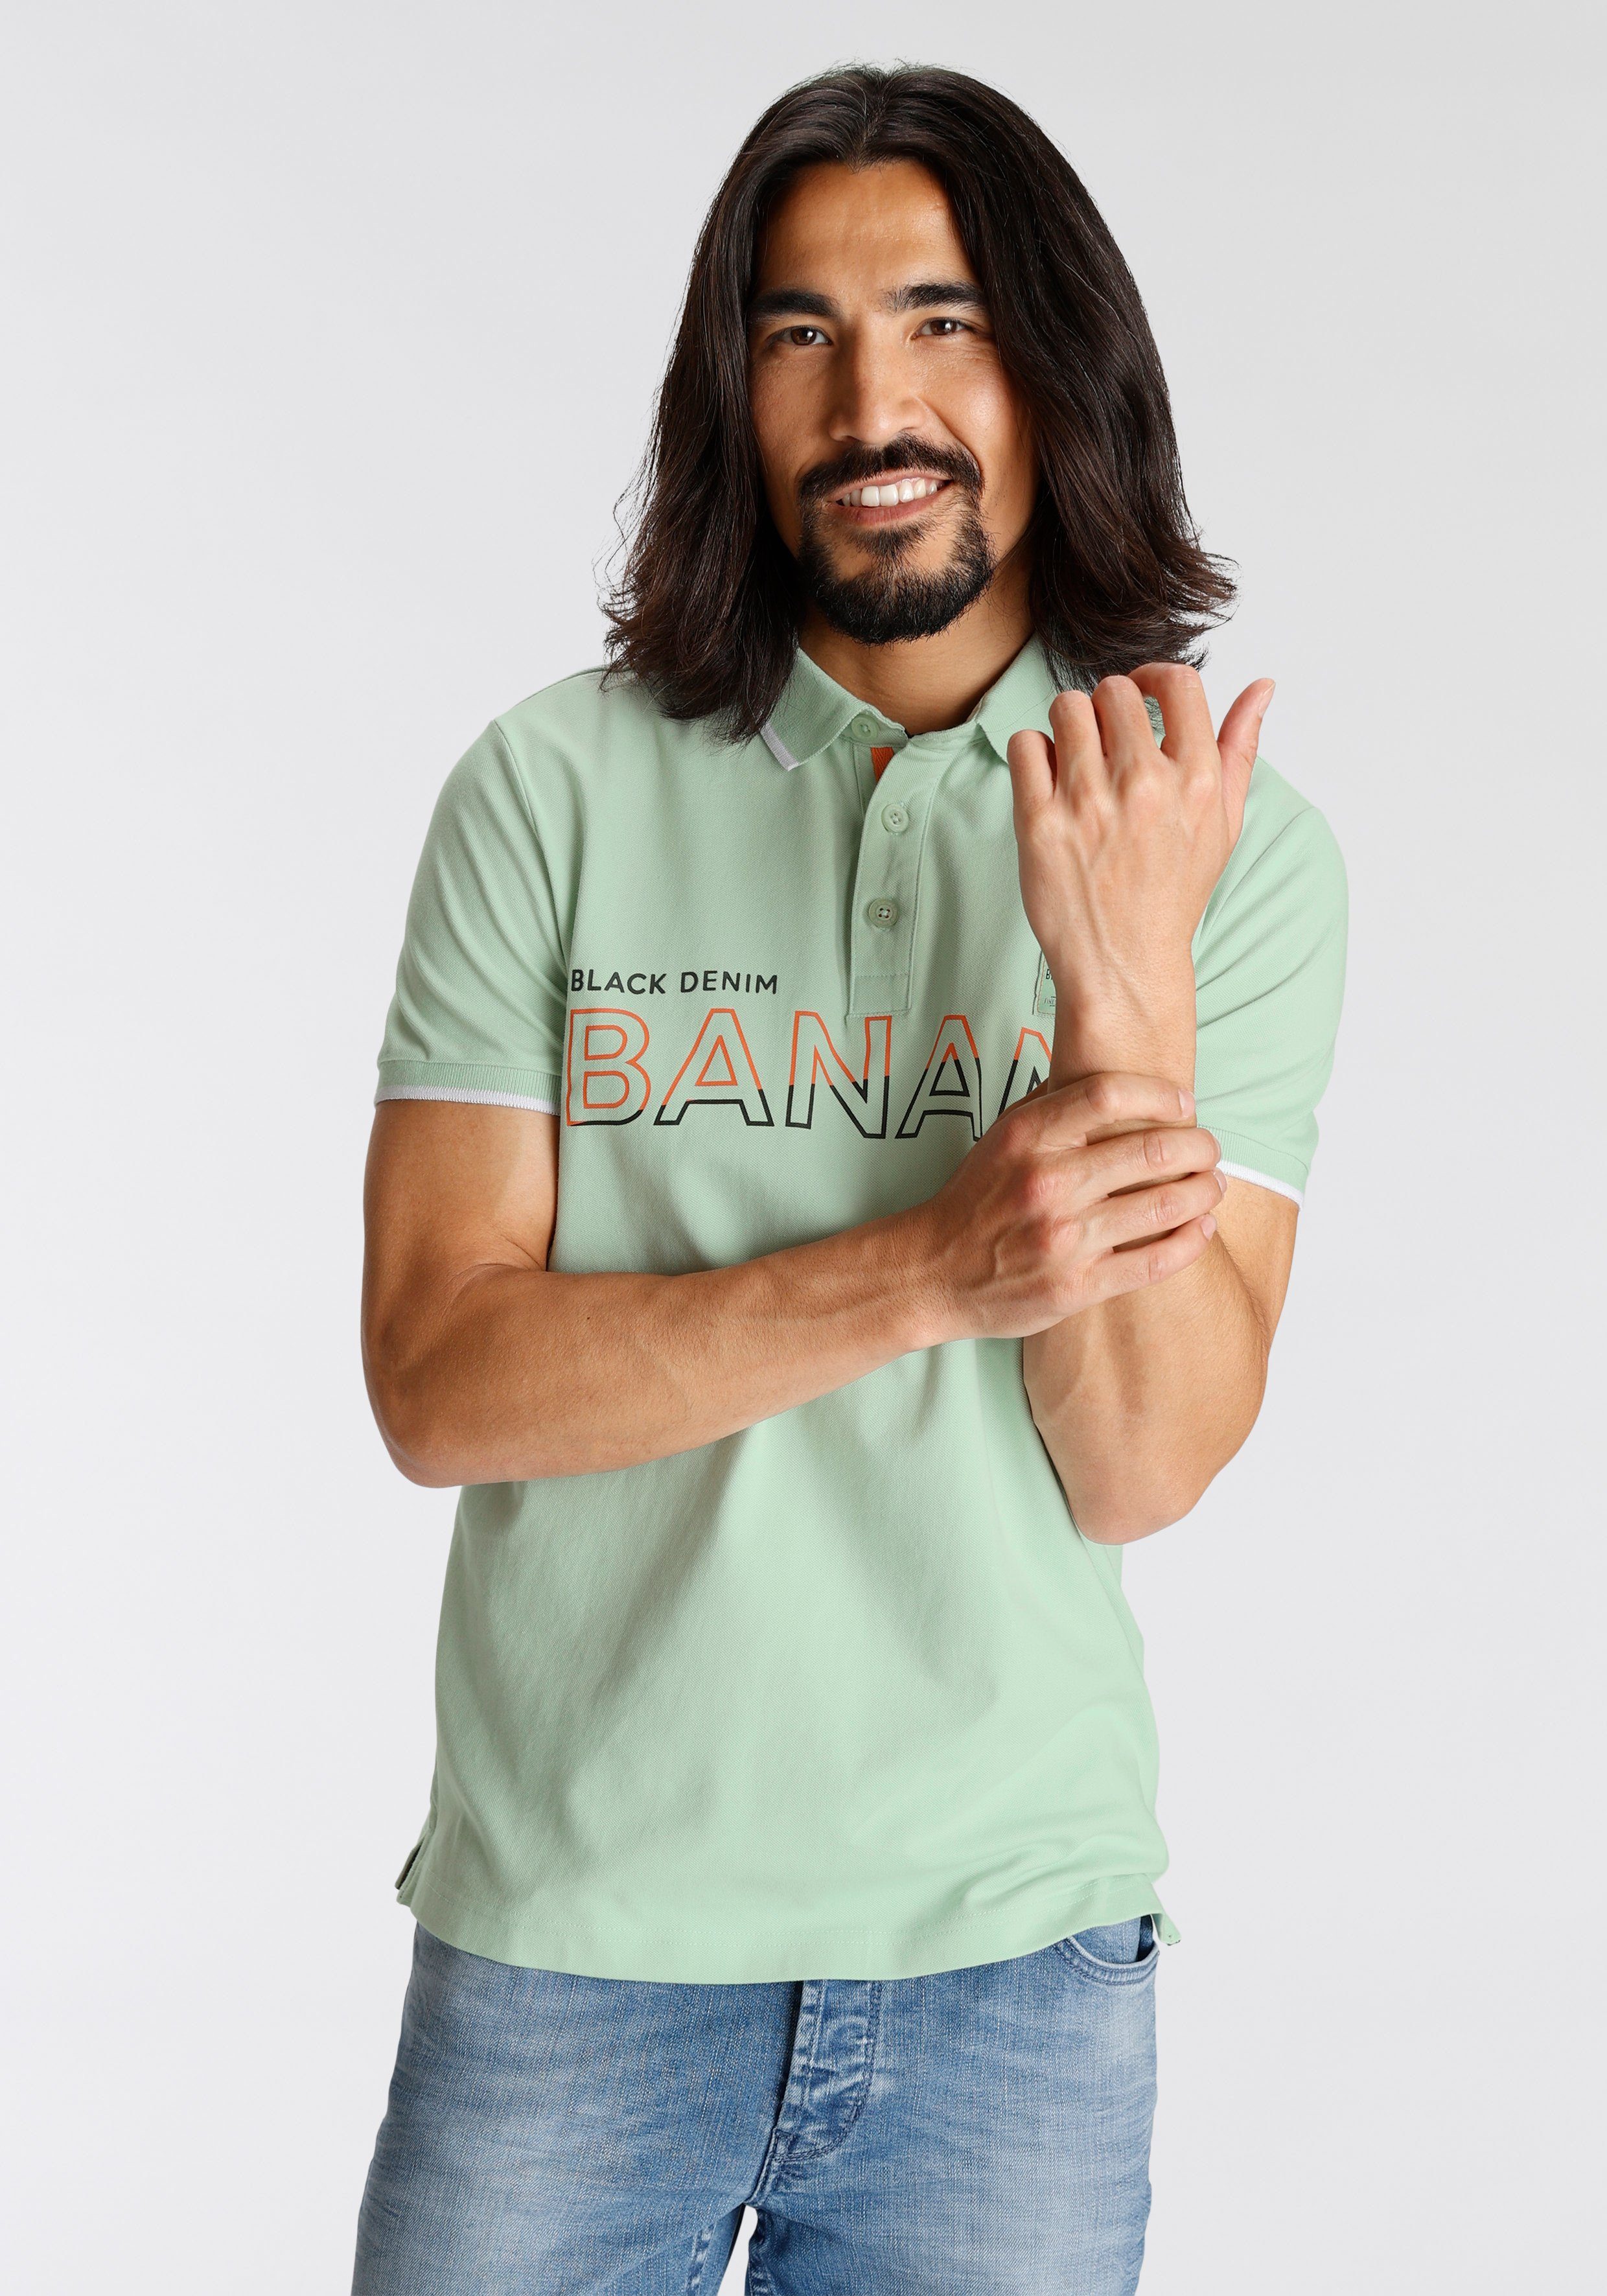 Bruno Banani Poloshirt hell grün | V-Shirts